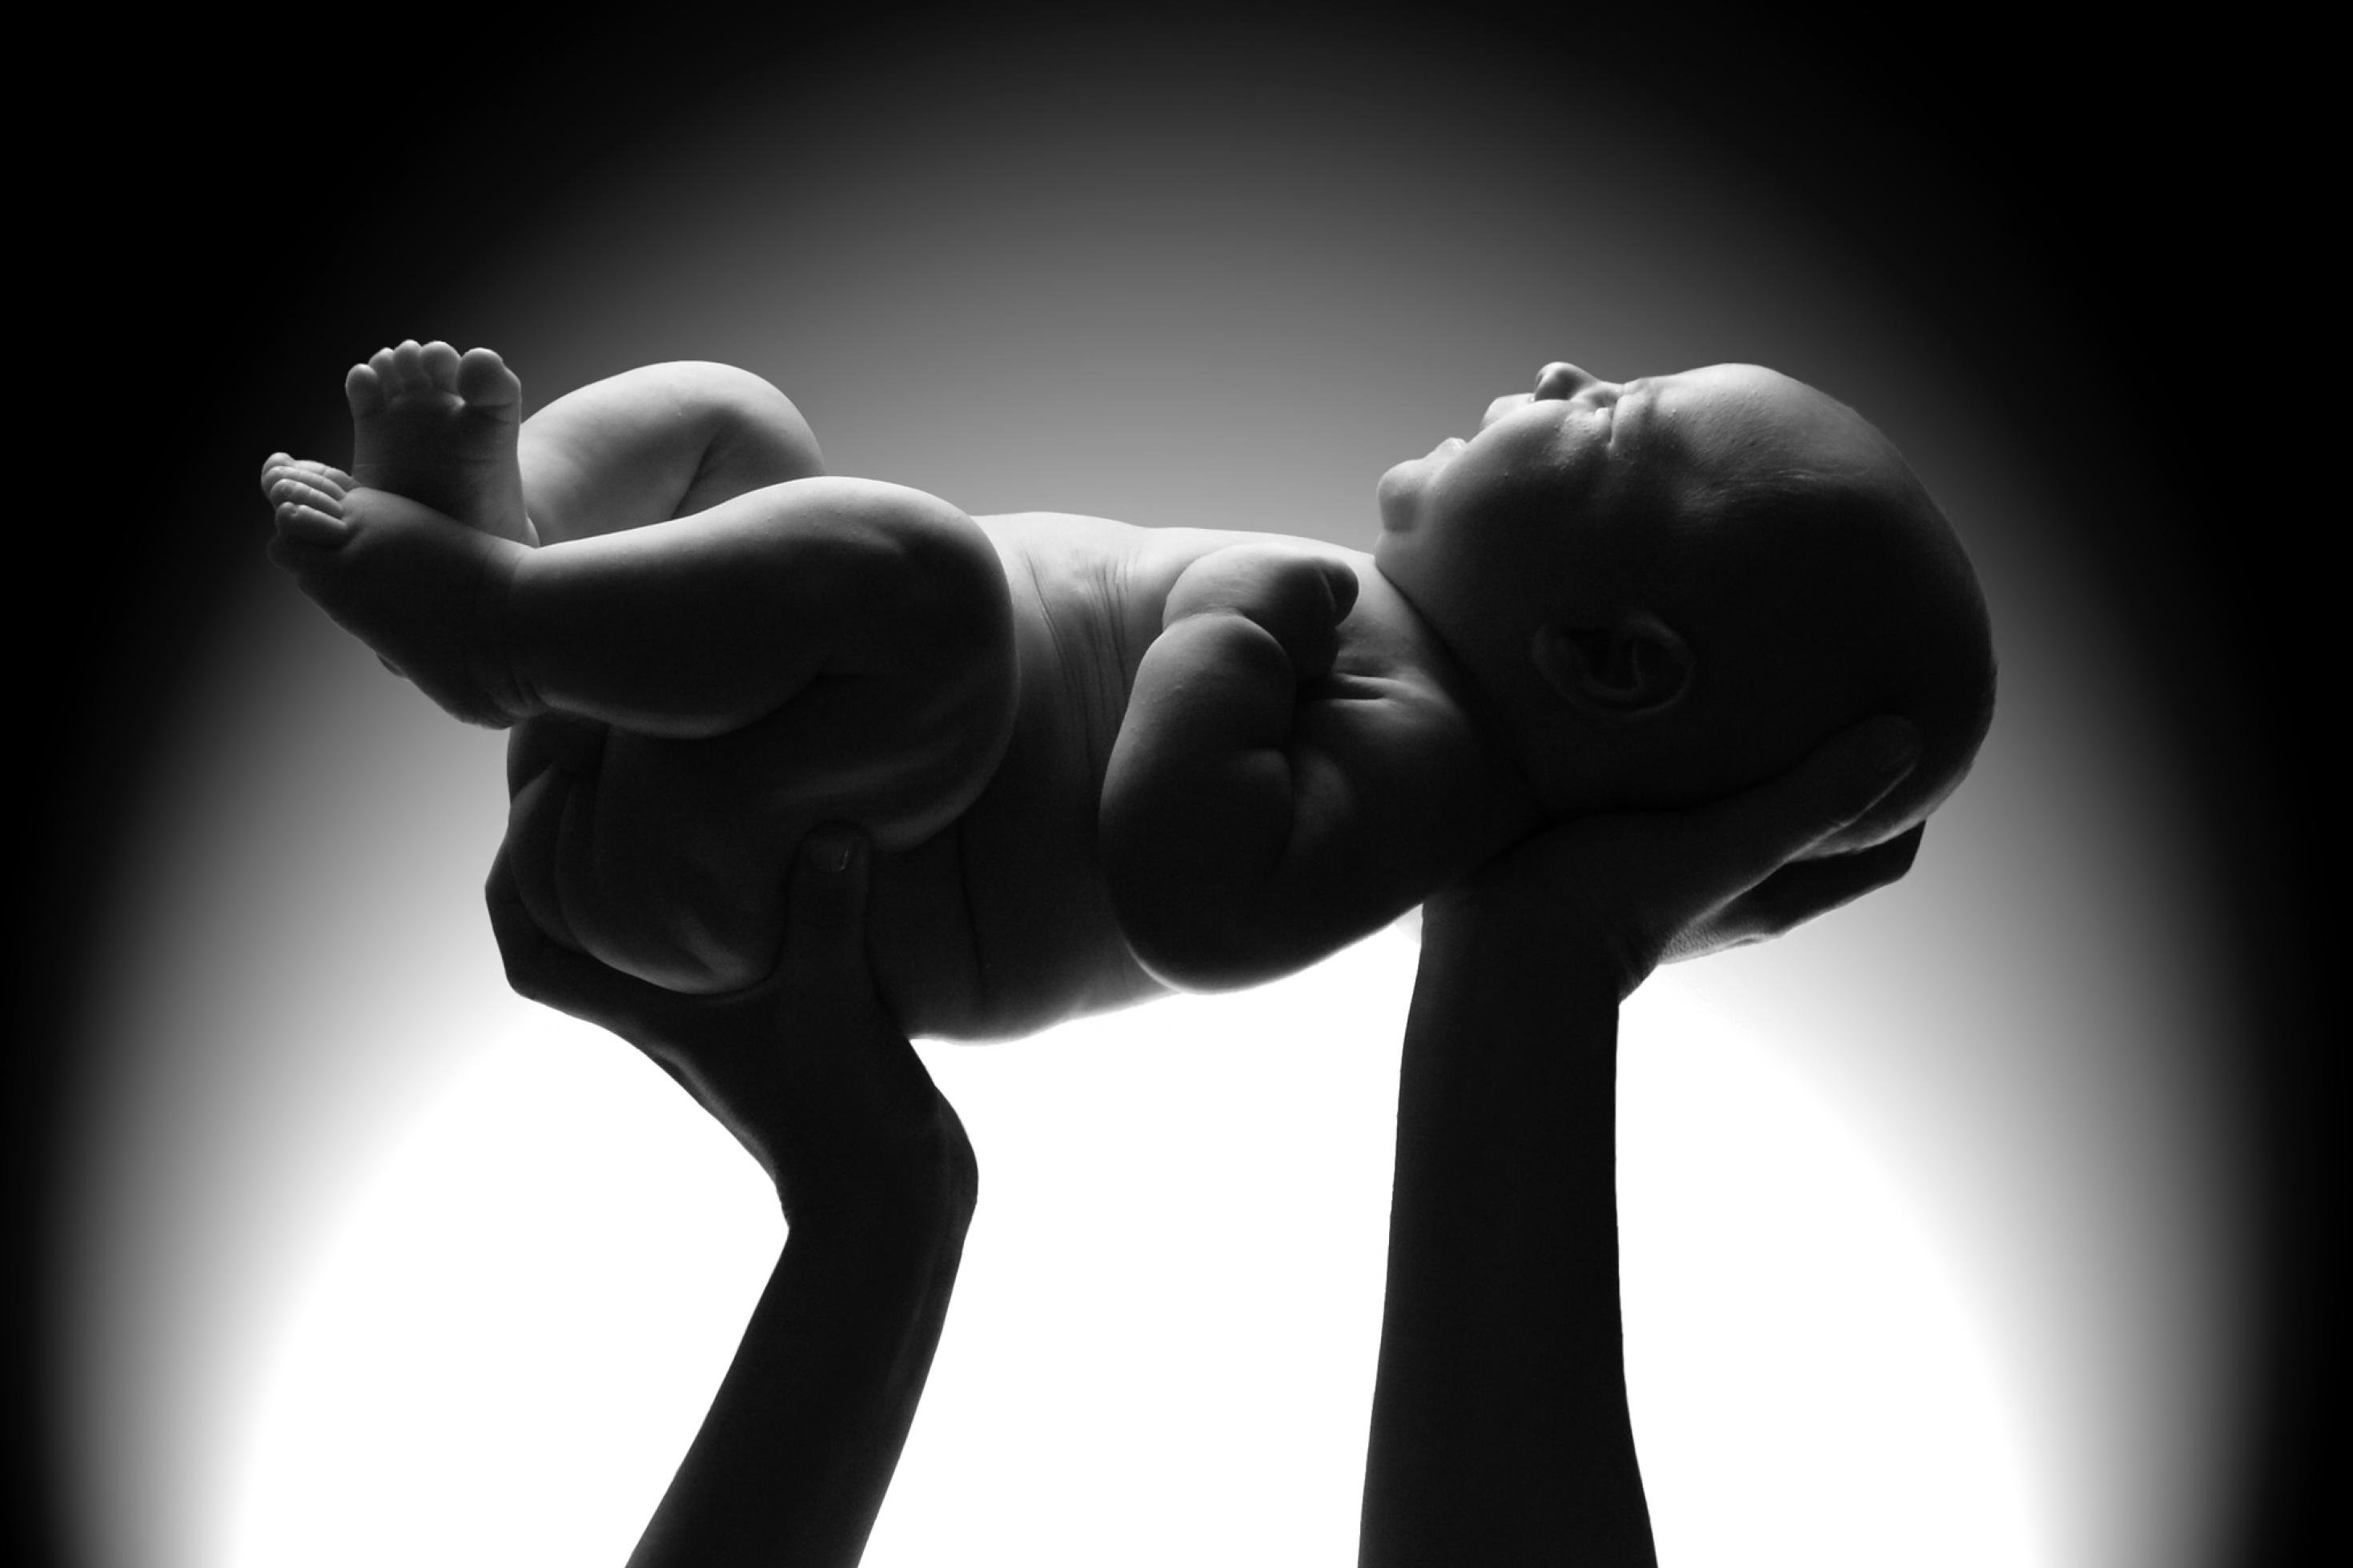 Das Schwarzweiß-Foto zeigt die von oben angeleuchtete Silhouette eines Neugeborenen, das von zwei aufragenden Armen und Händen vor einem hellen Hintergrund hochgehalten wird.